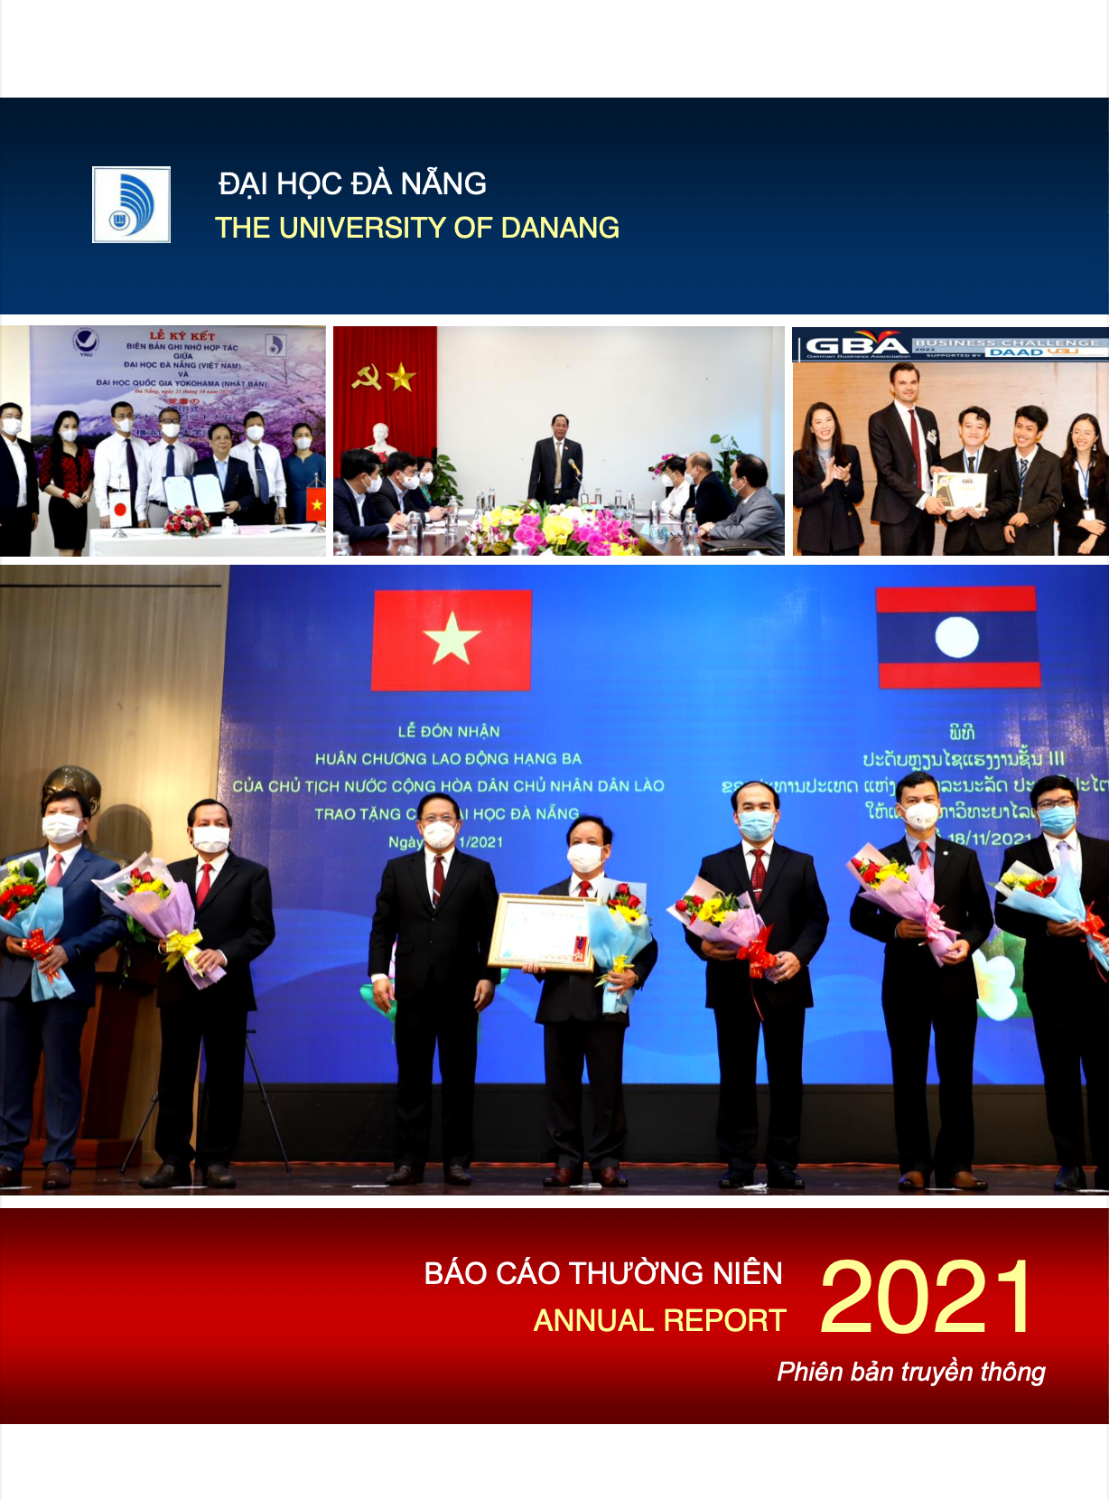 Đại học Đà Nẵng giới thiệu Báo cáo thường niên năm 2021 (Annual Report UD-2021) phiên bản truyền thông